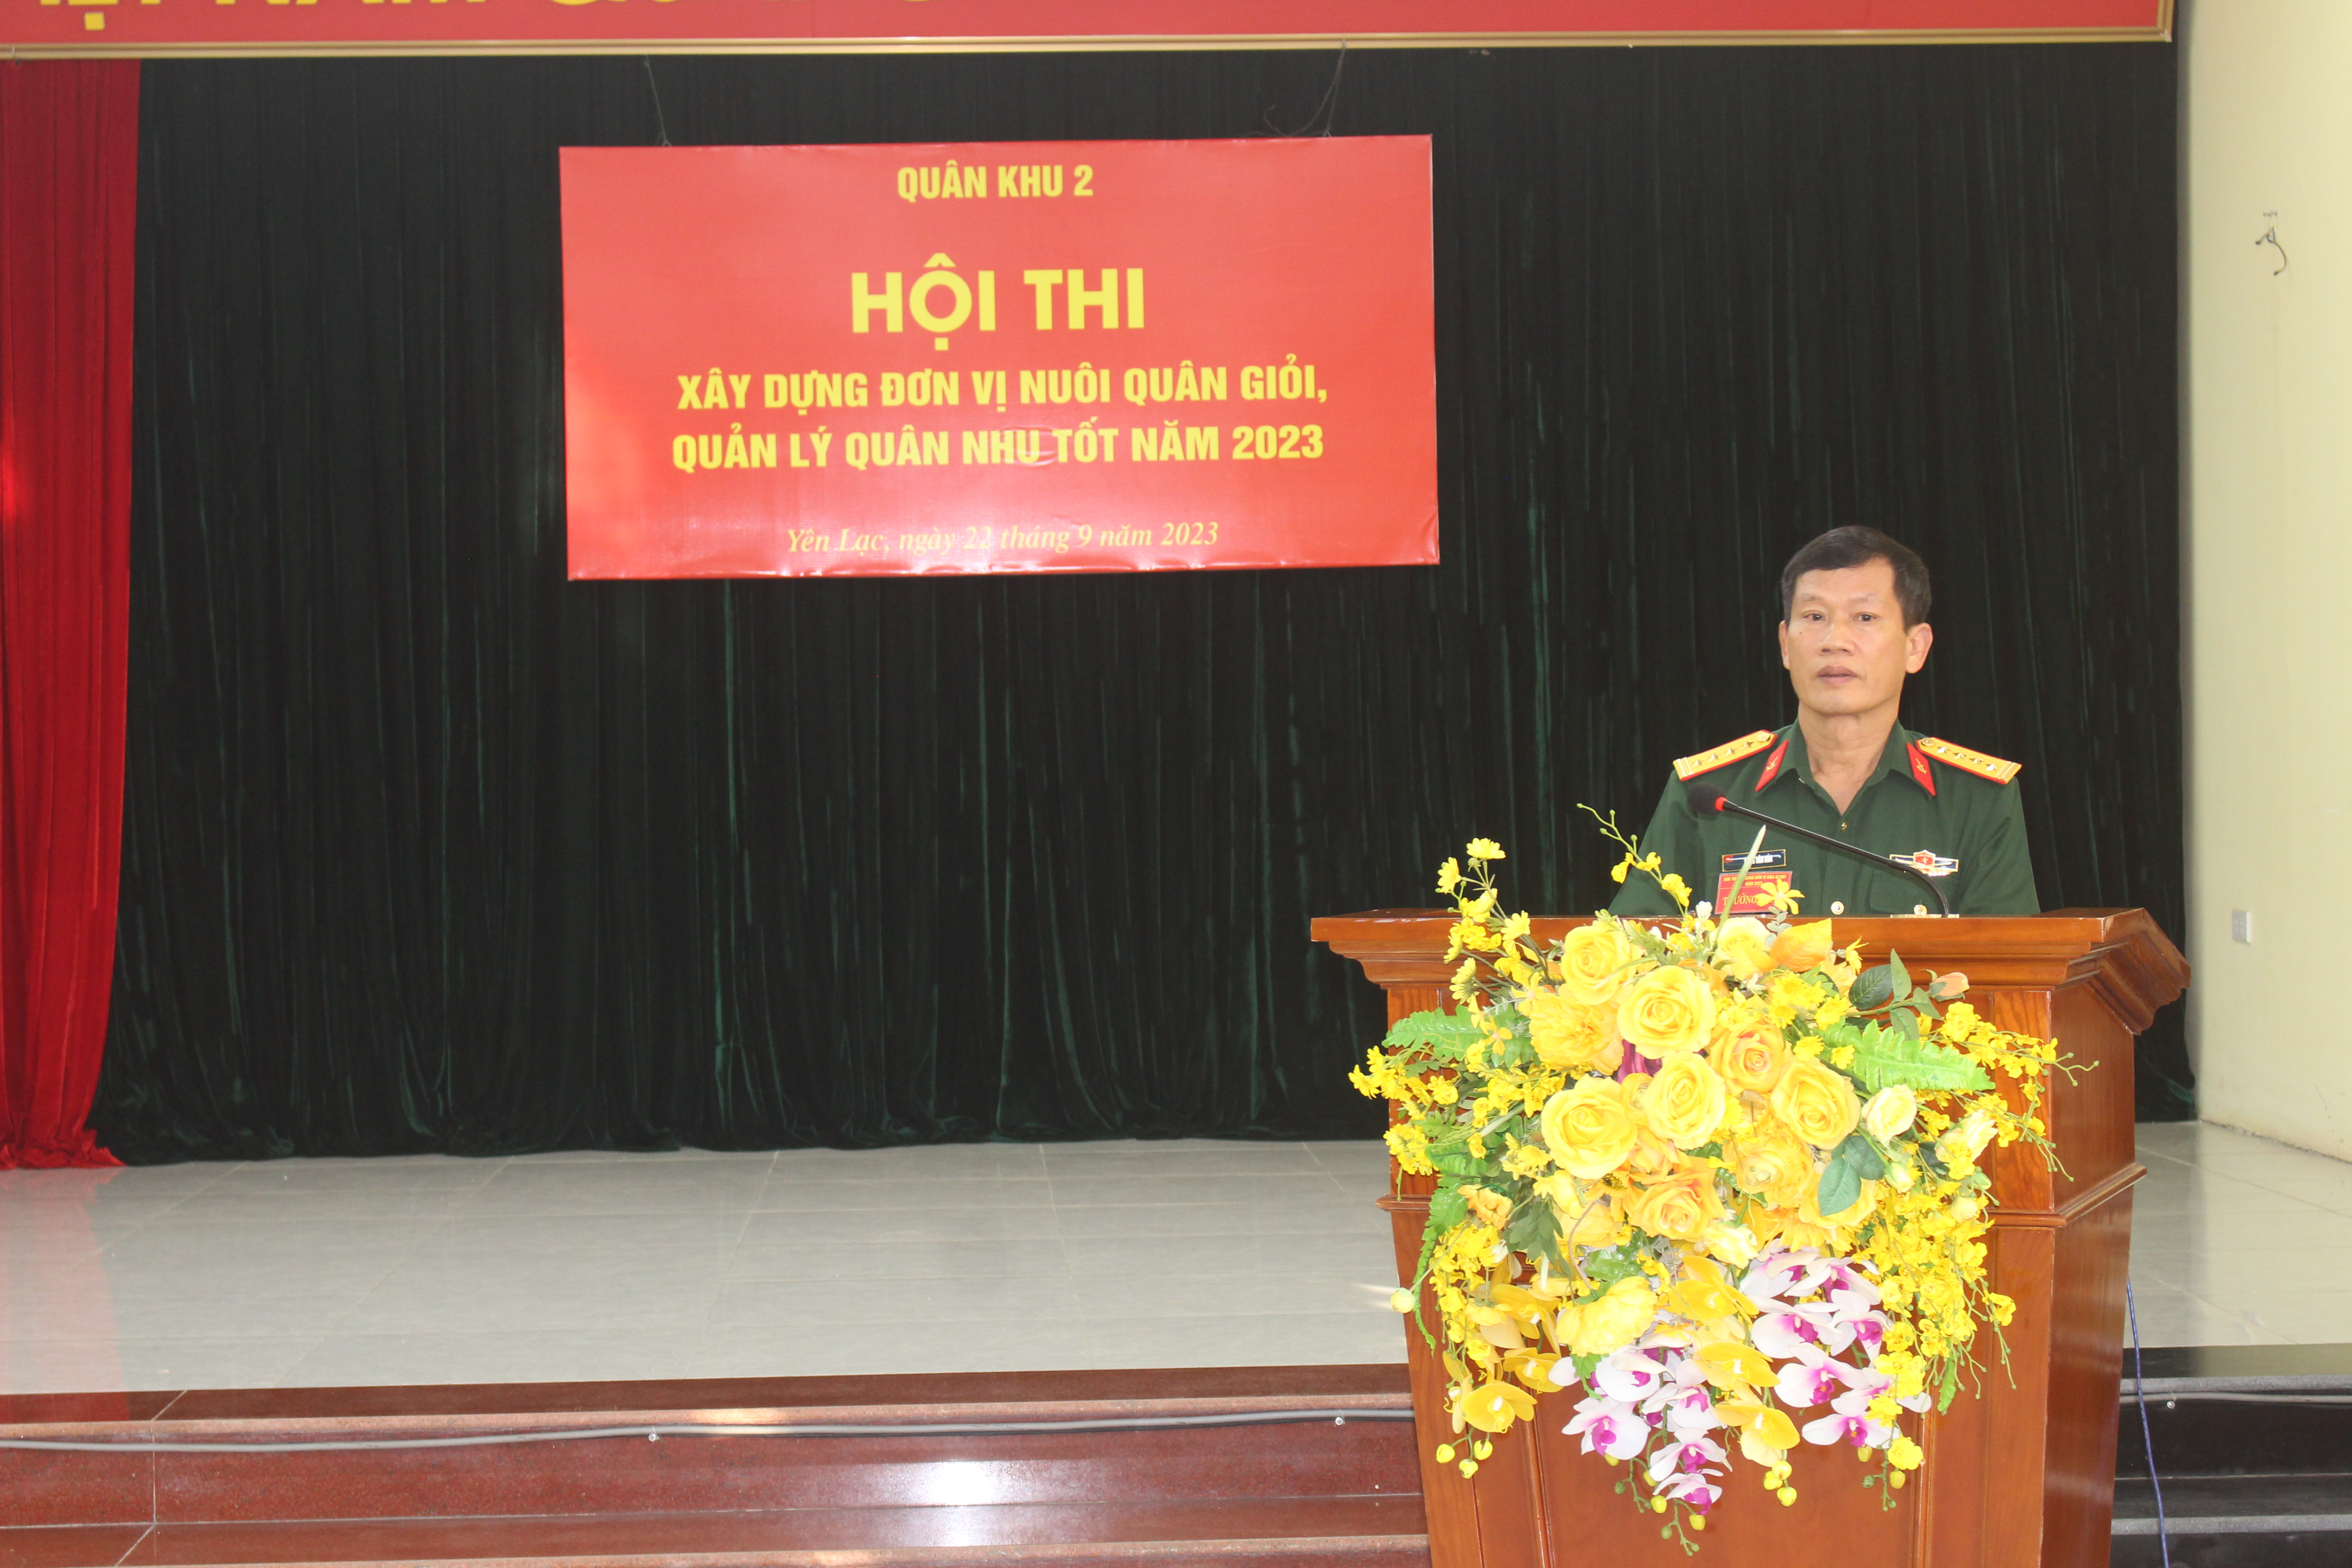 Ban CHQS huyện Yên Lạc đạt loại xuất sắc “Xây dựng đơn vị nuôi quân giỏi, quản lý quân nhu tốt”